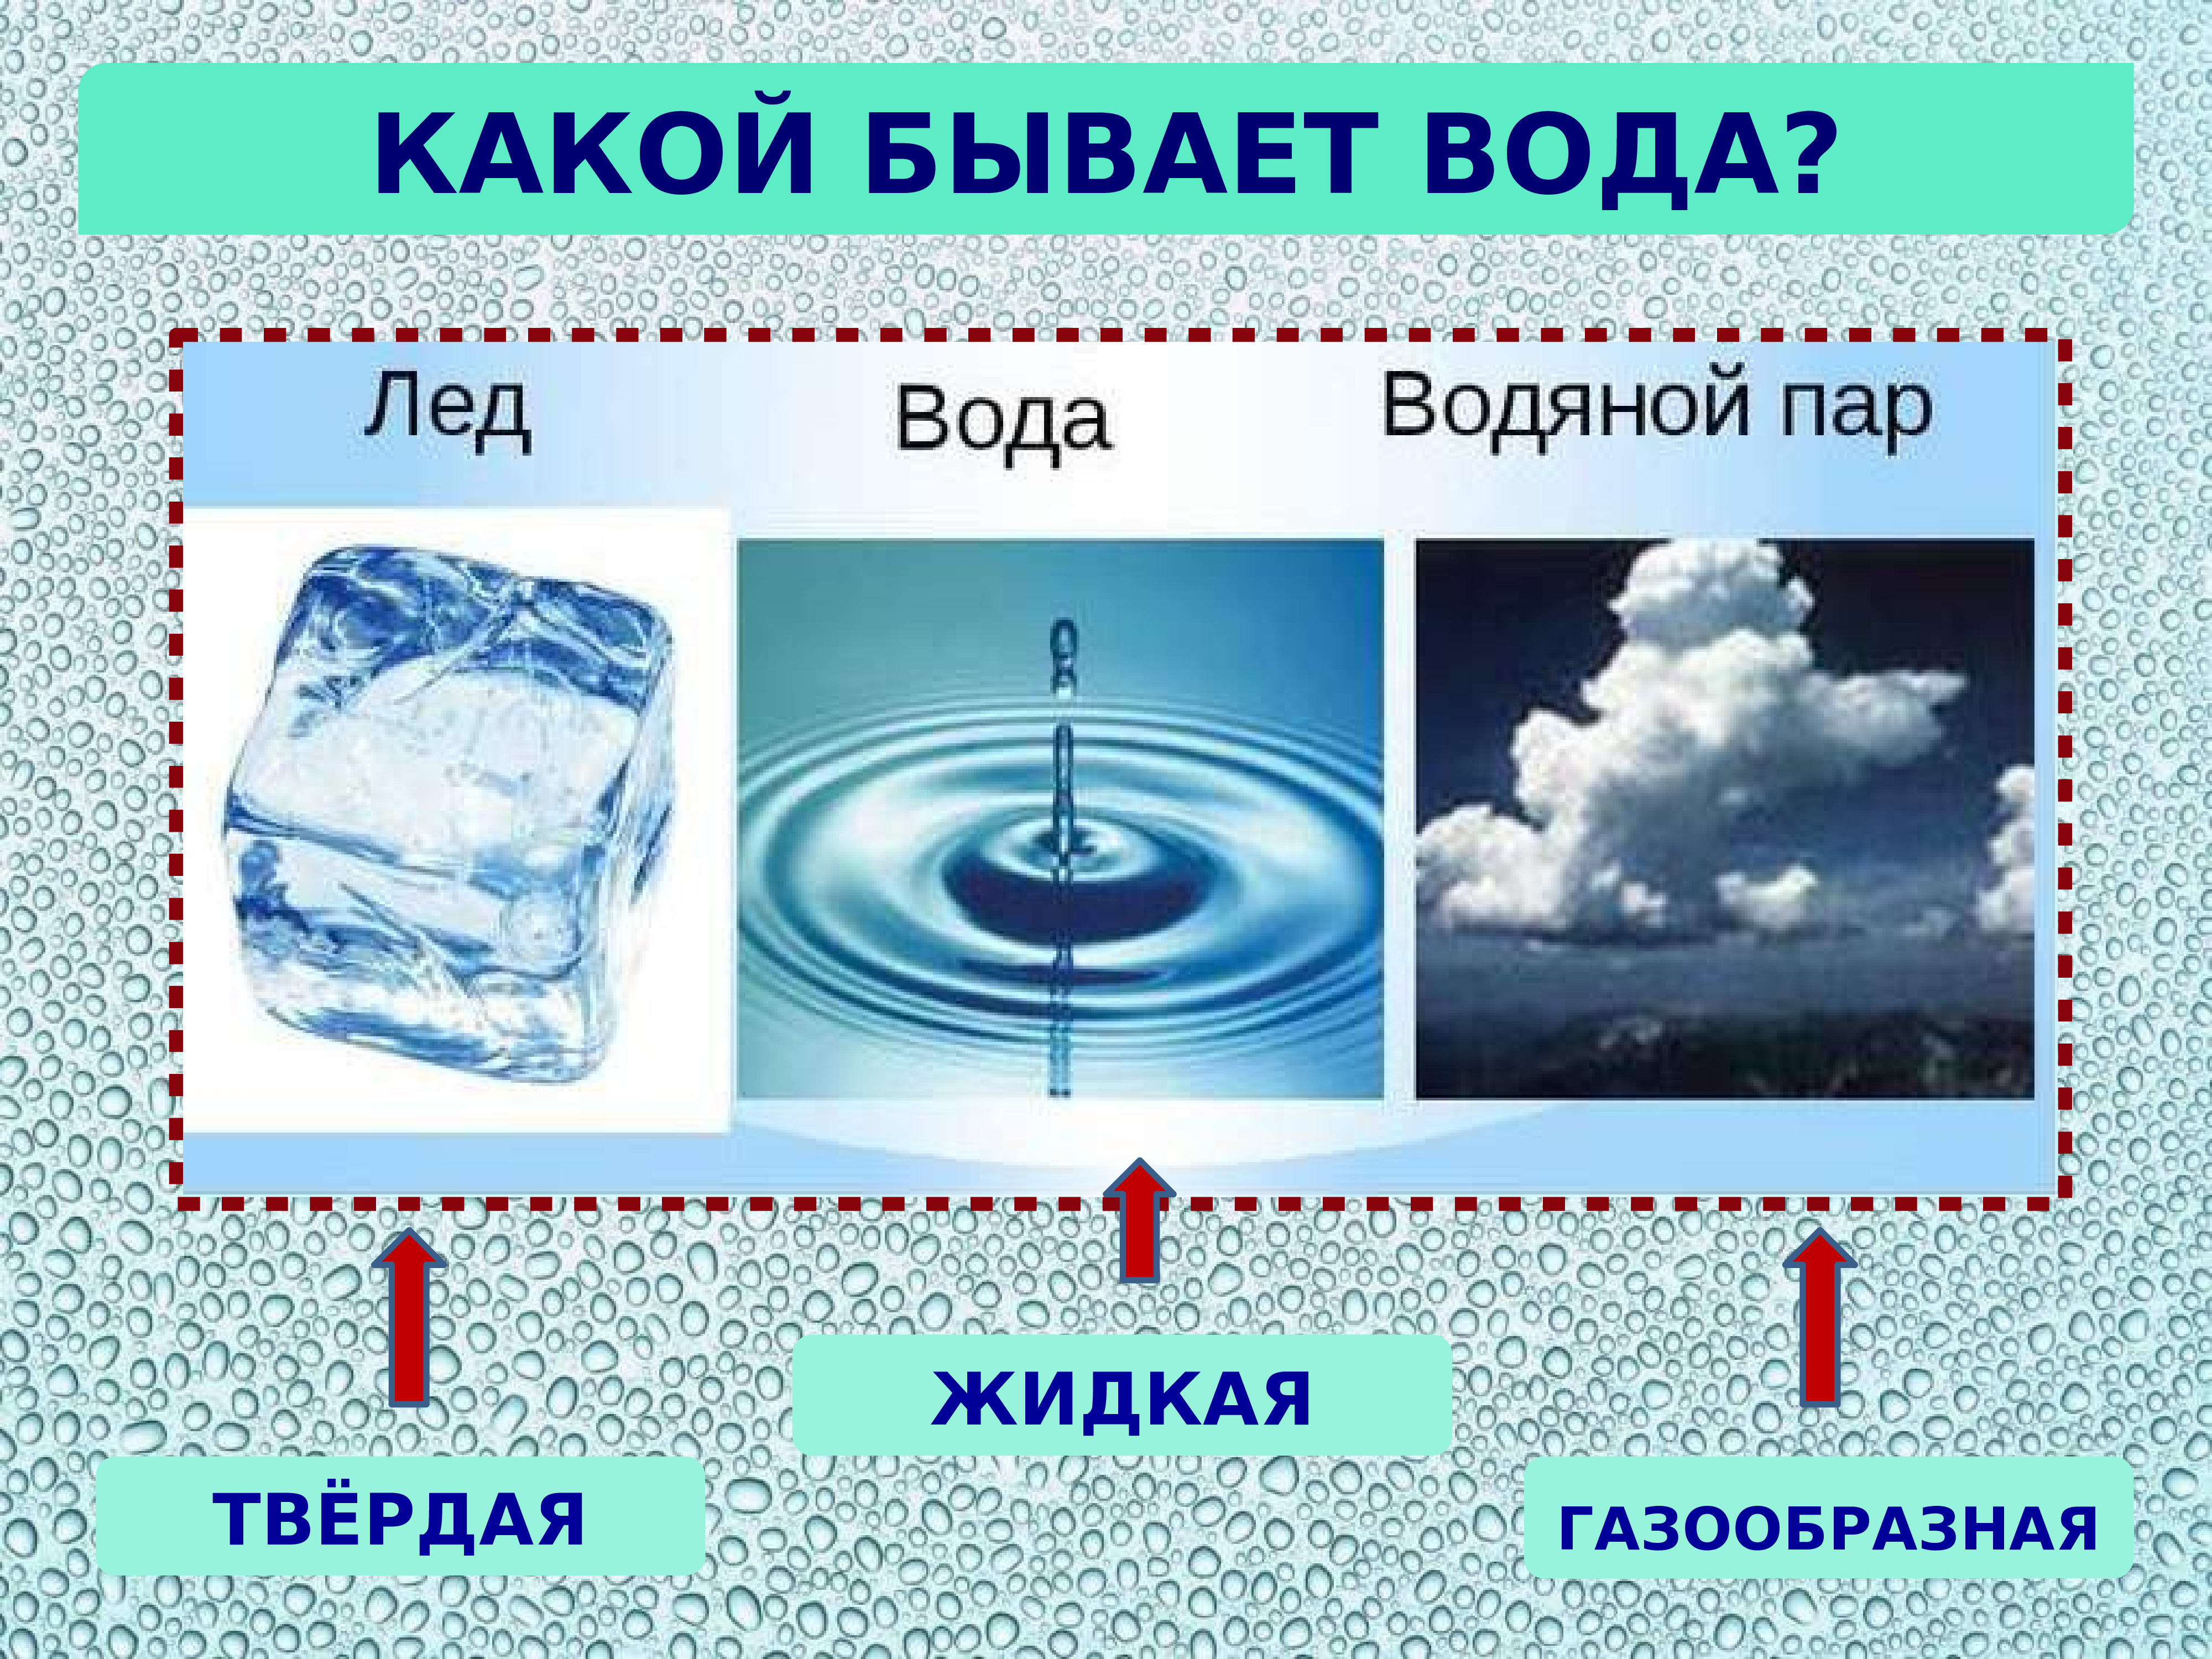 Различное состояние воды